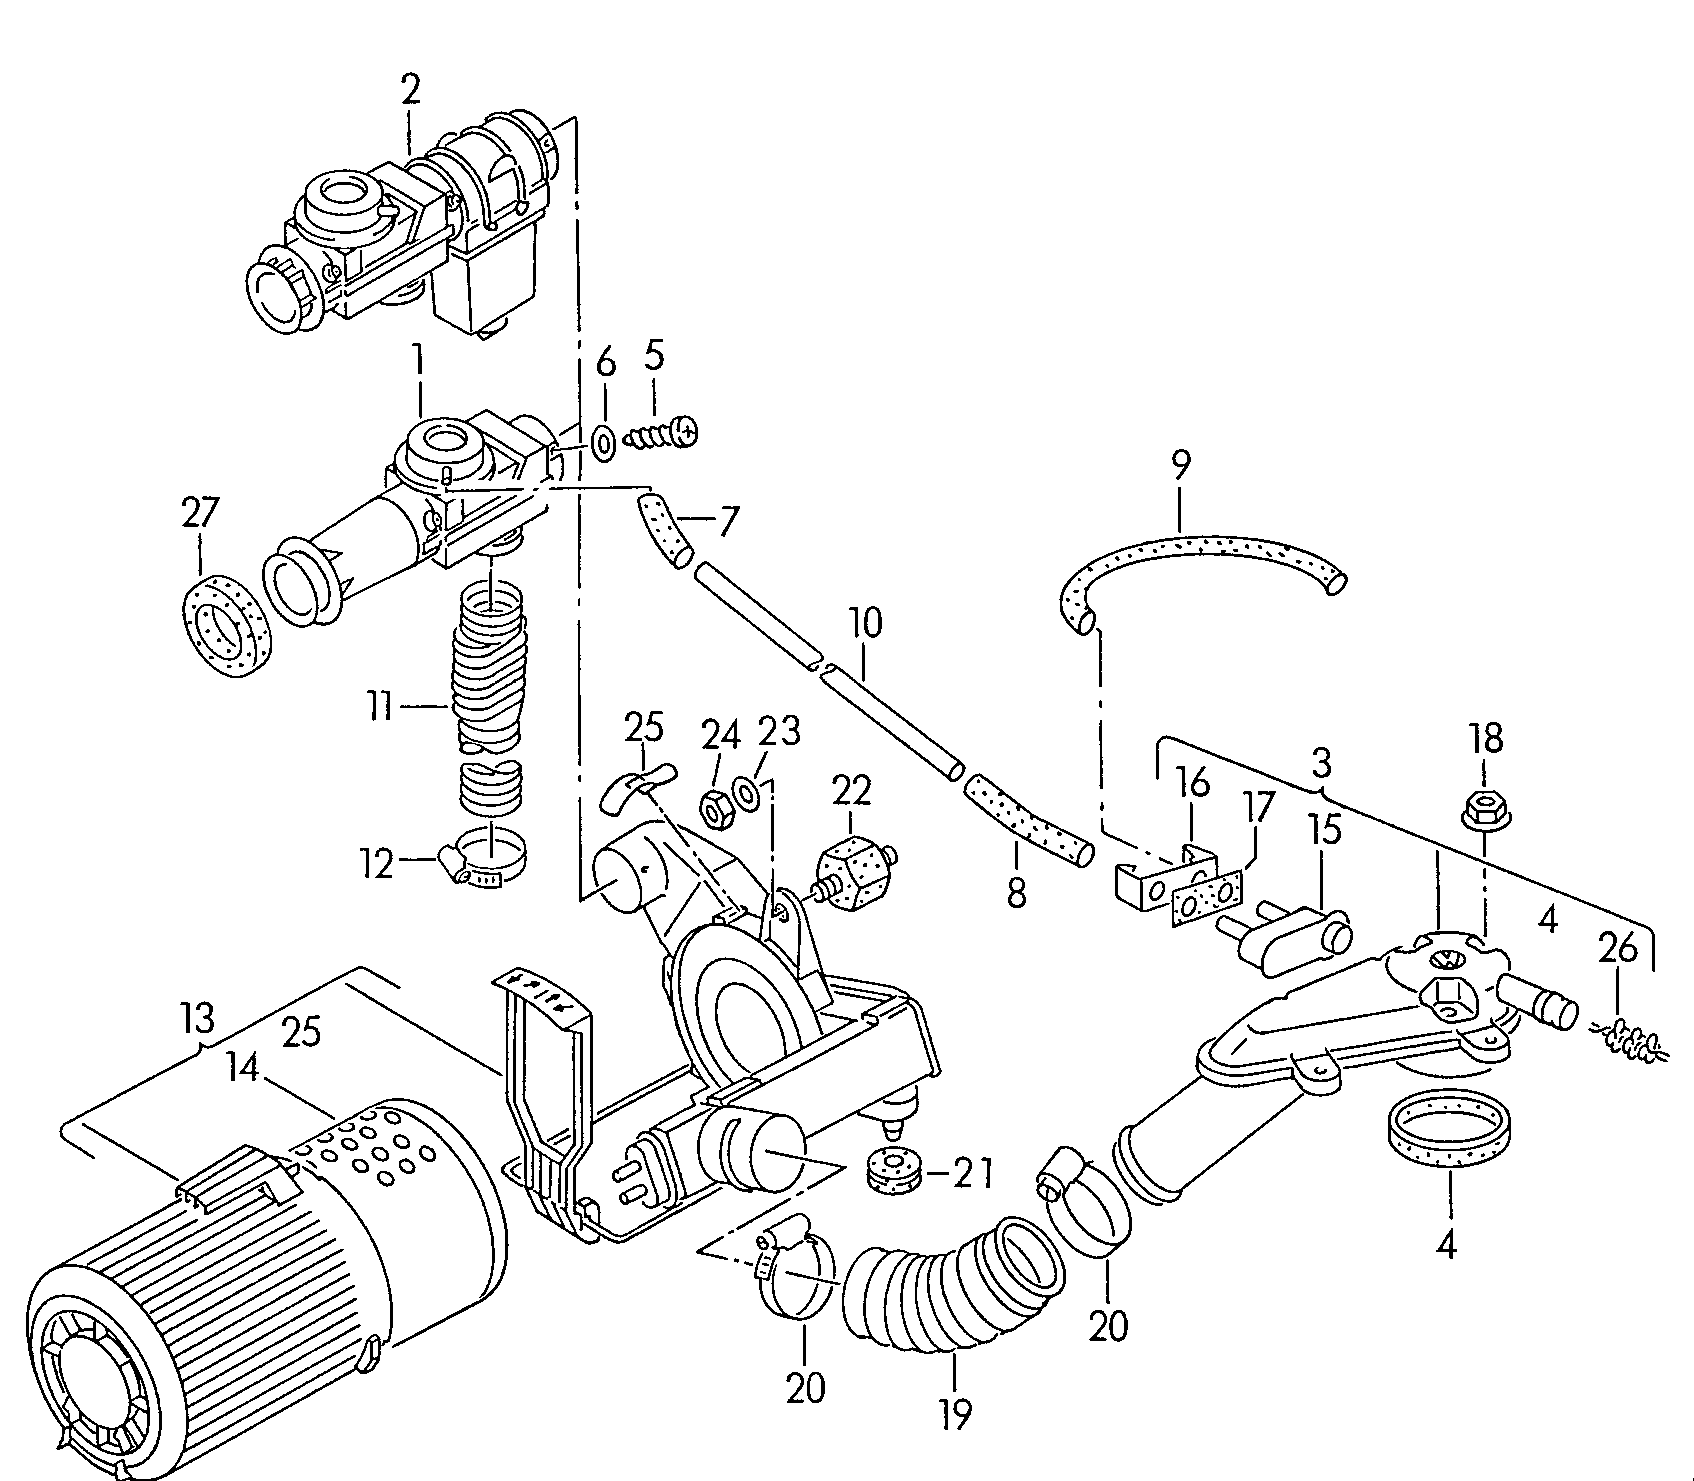 Luftfilter mit Anschluss-
teilen - Transporter(TR)  